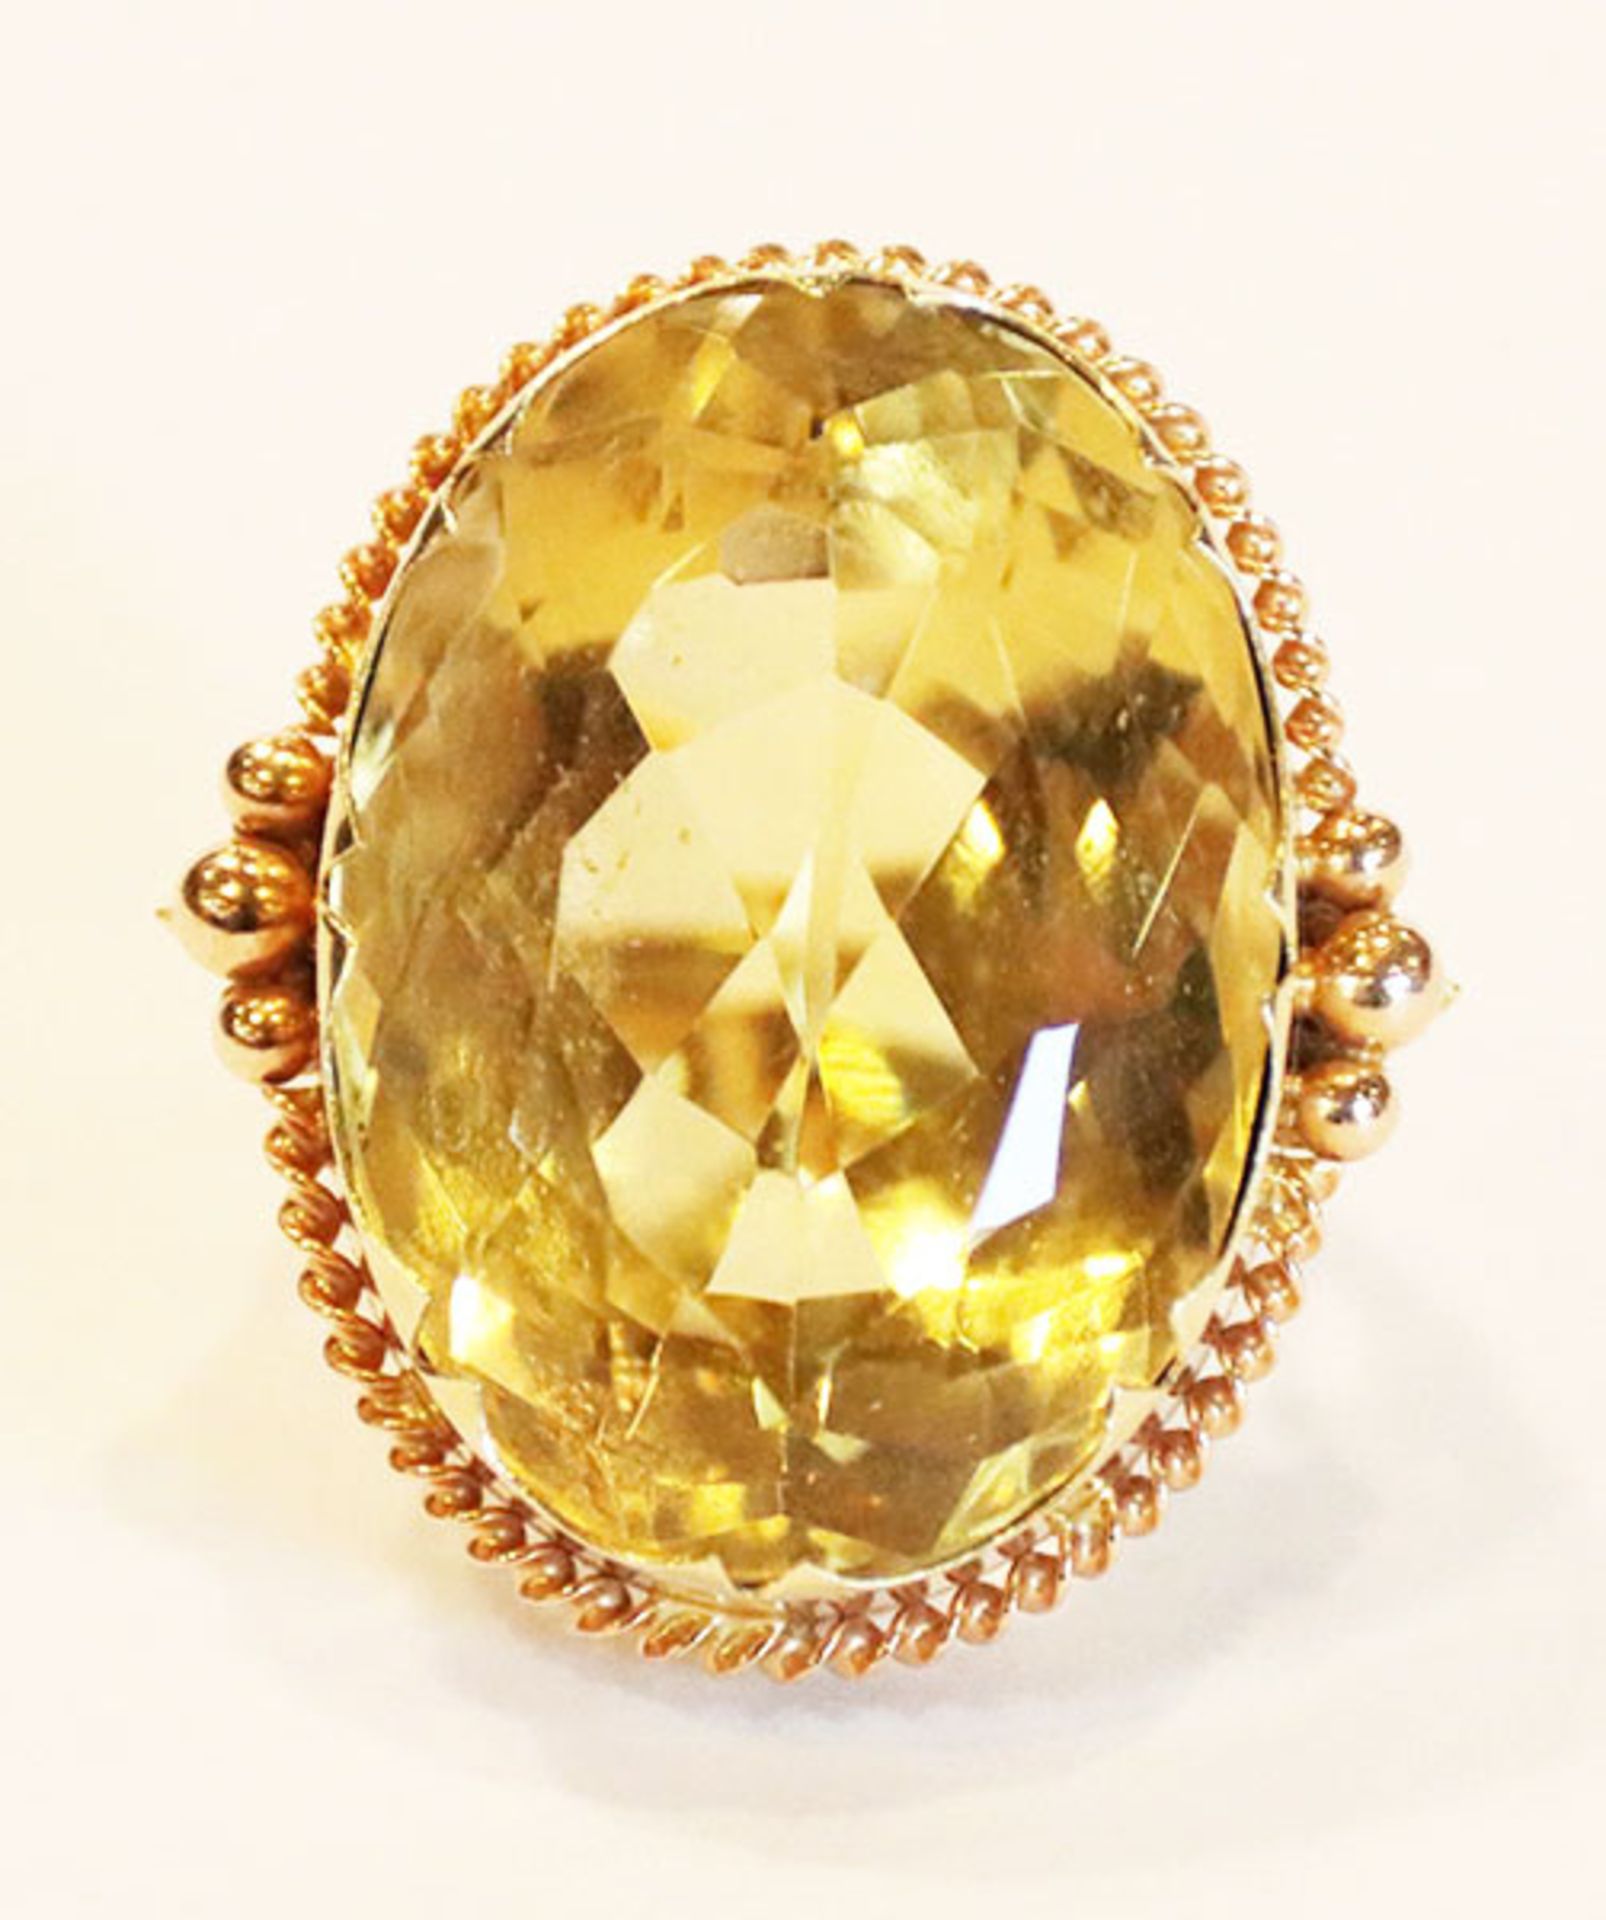 14 k Gelbgold Ring mit Goldtopas, feine Fassung, 13,5 gr., Gr. 50